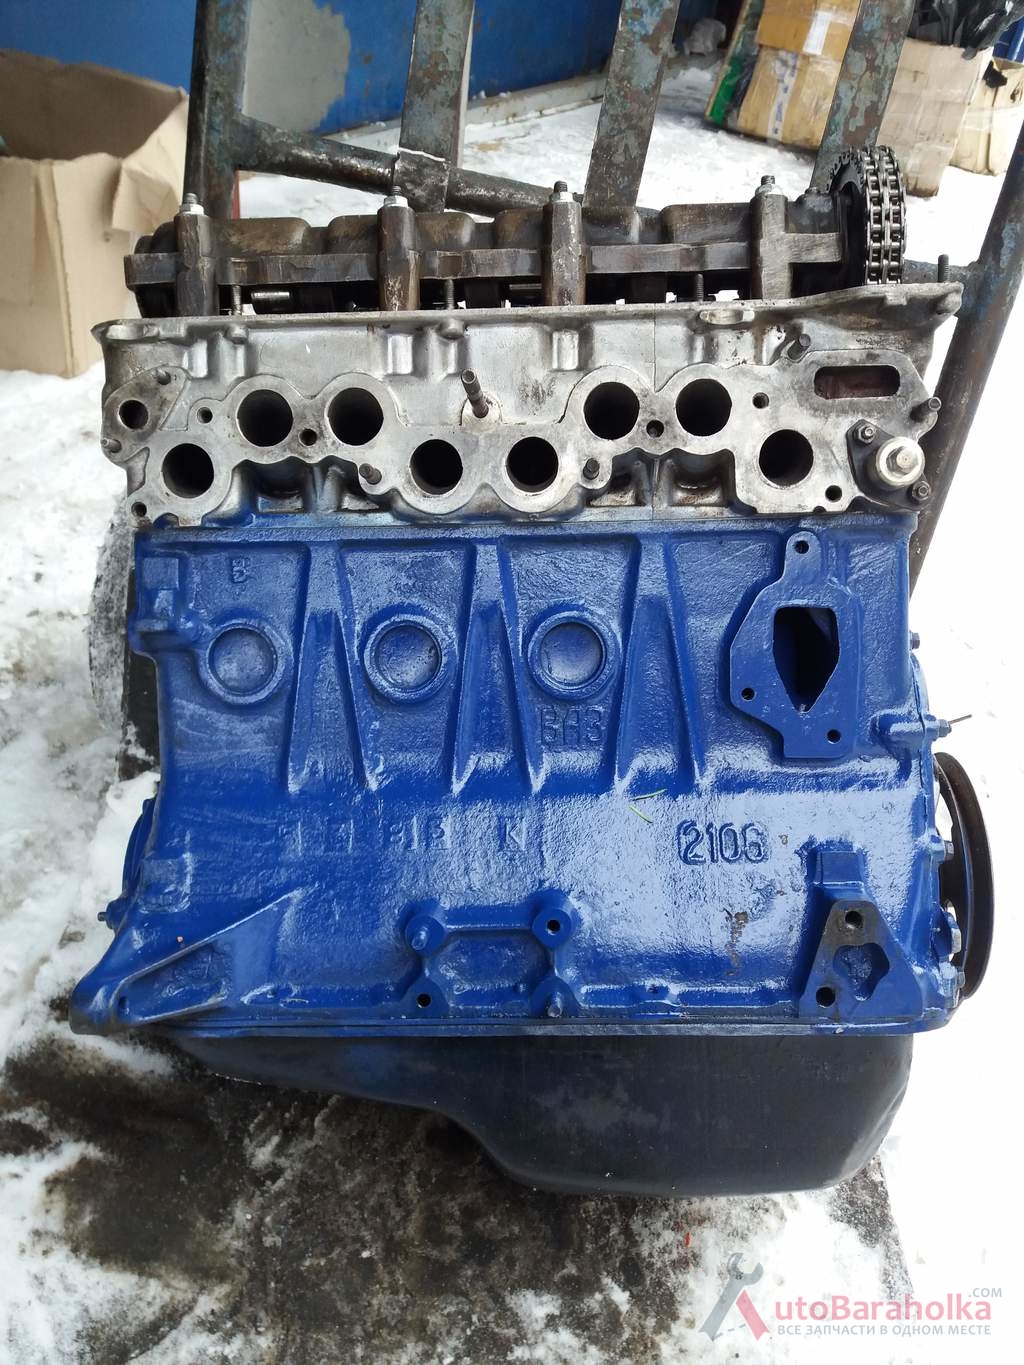 Купить Двигатель ВАЗ 2106 с экспортной машины, после кап ремонта(первый .